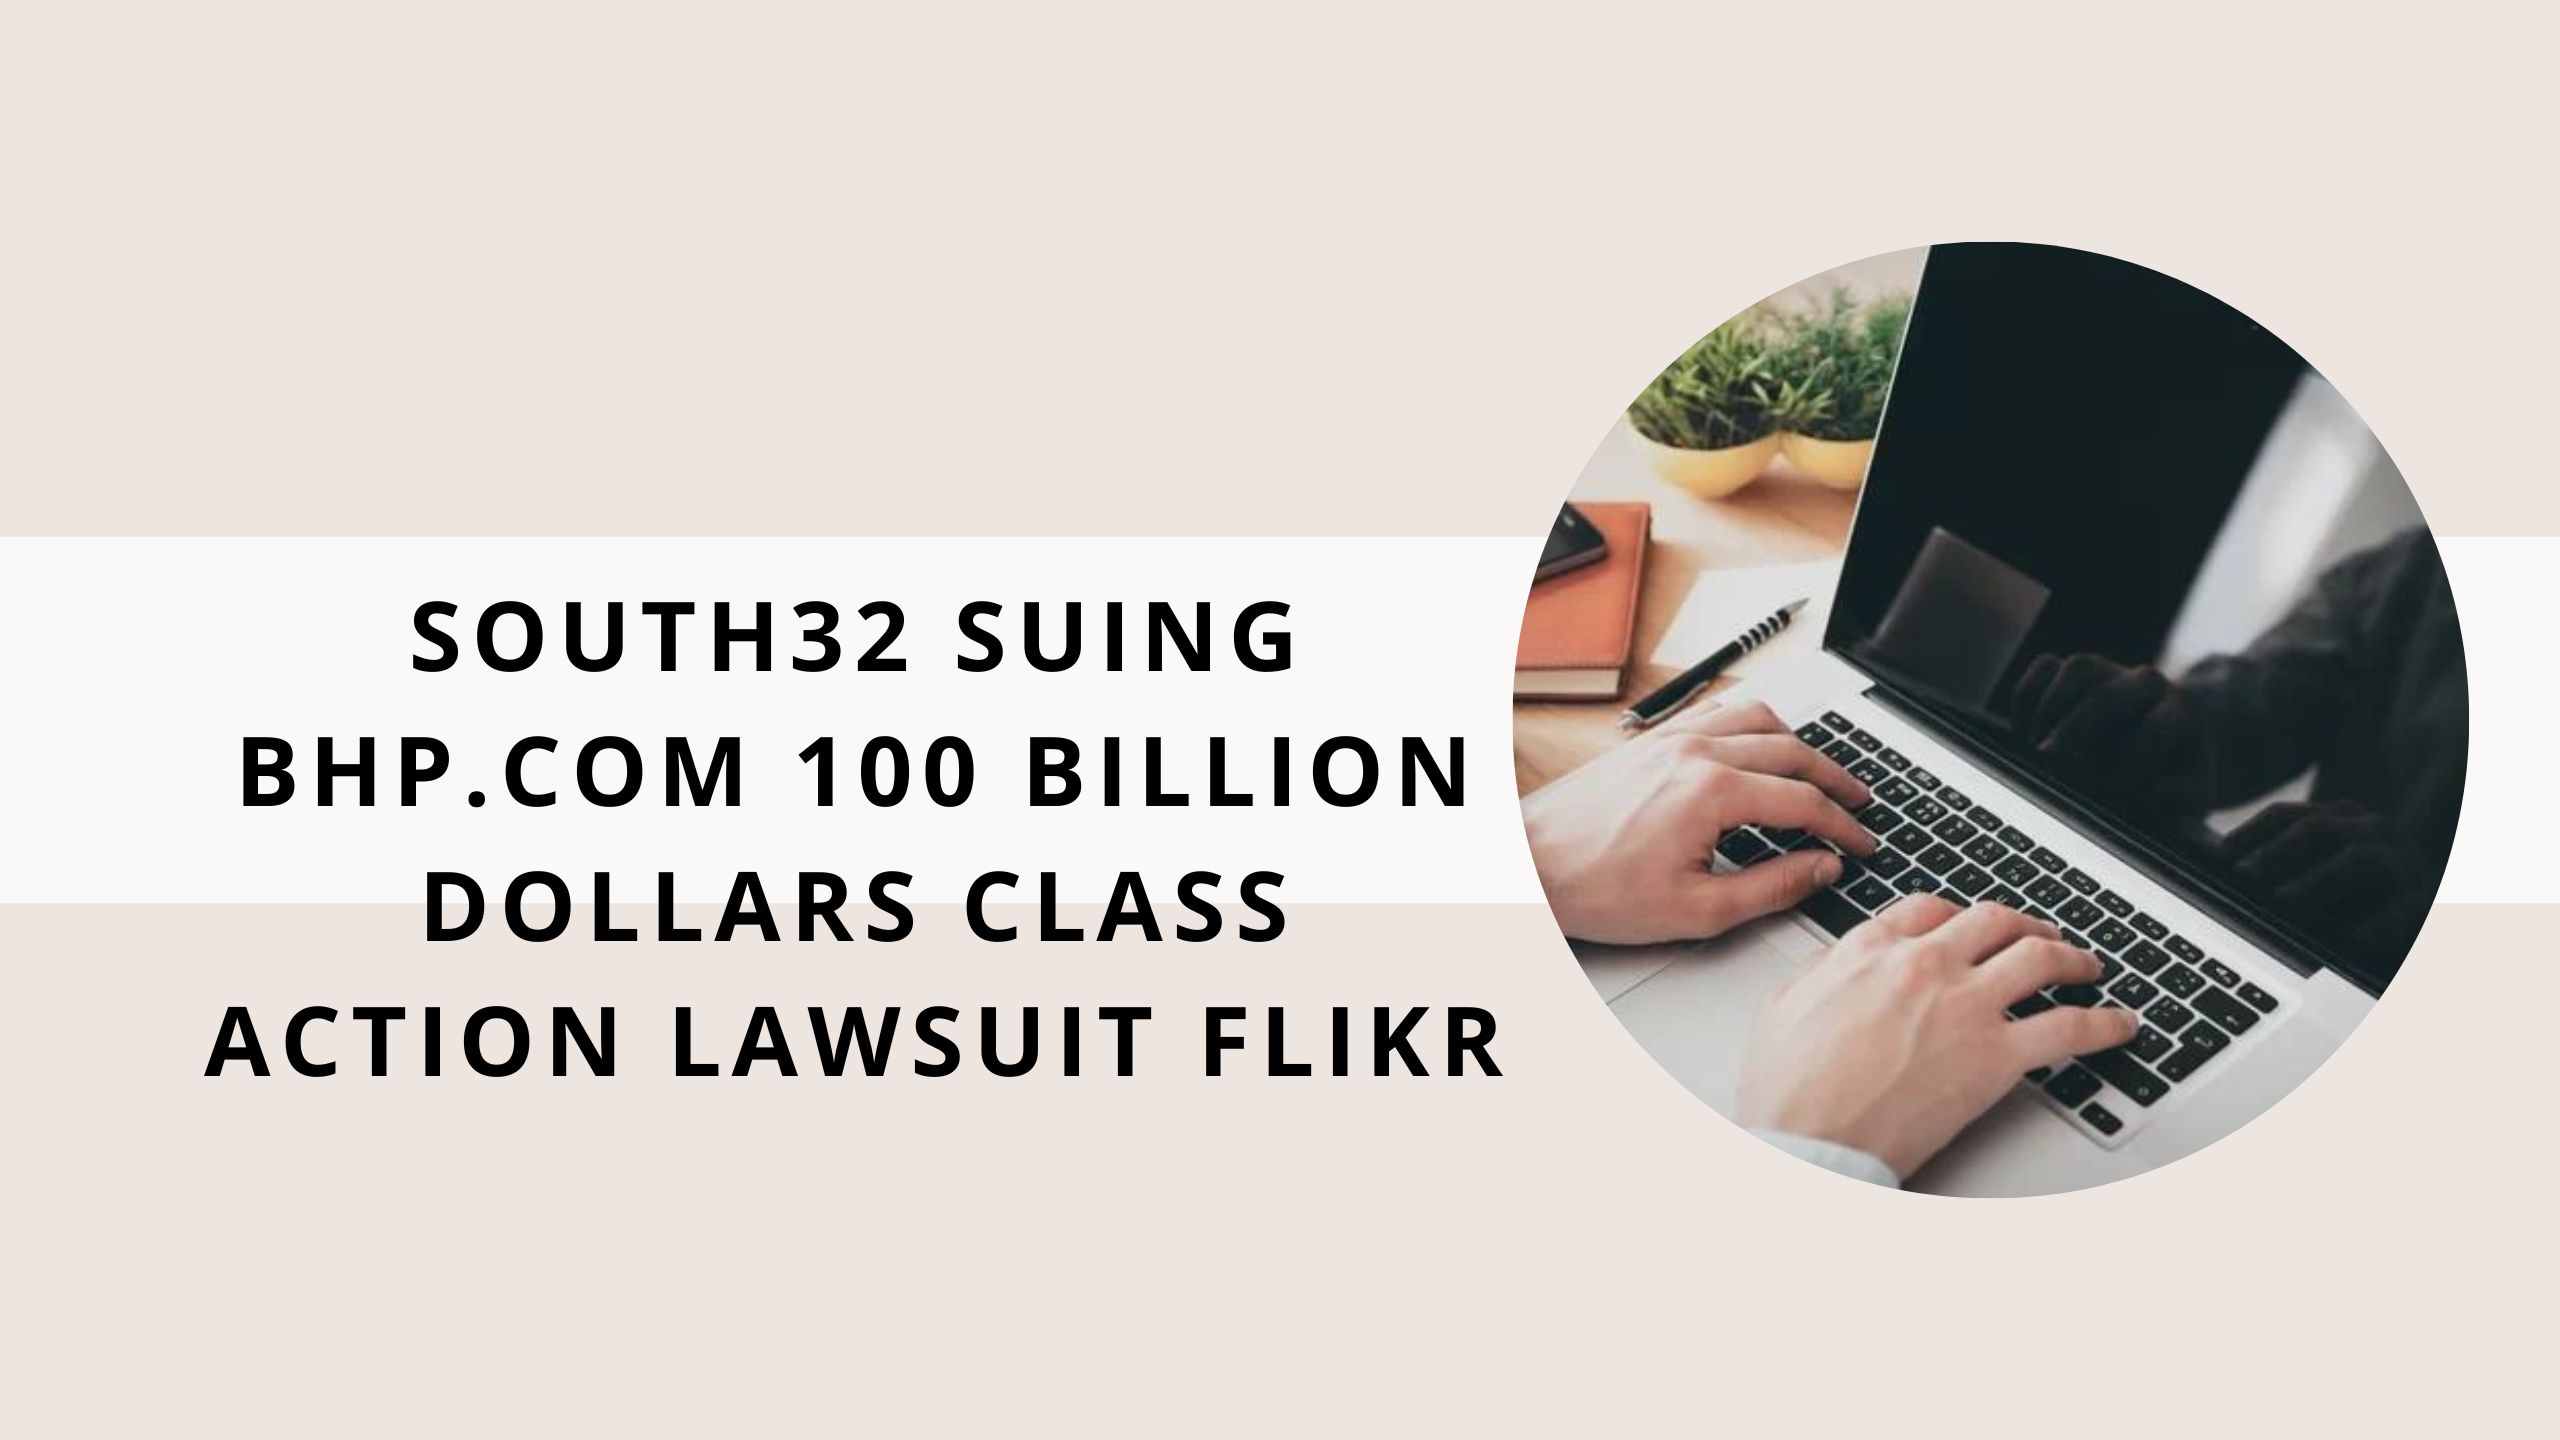 South32 Suing Bhp.com 100 Billion Dollars Class Action Lawsuit Flikr